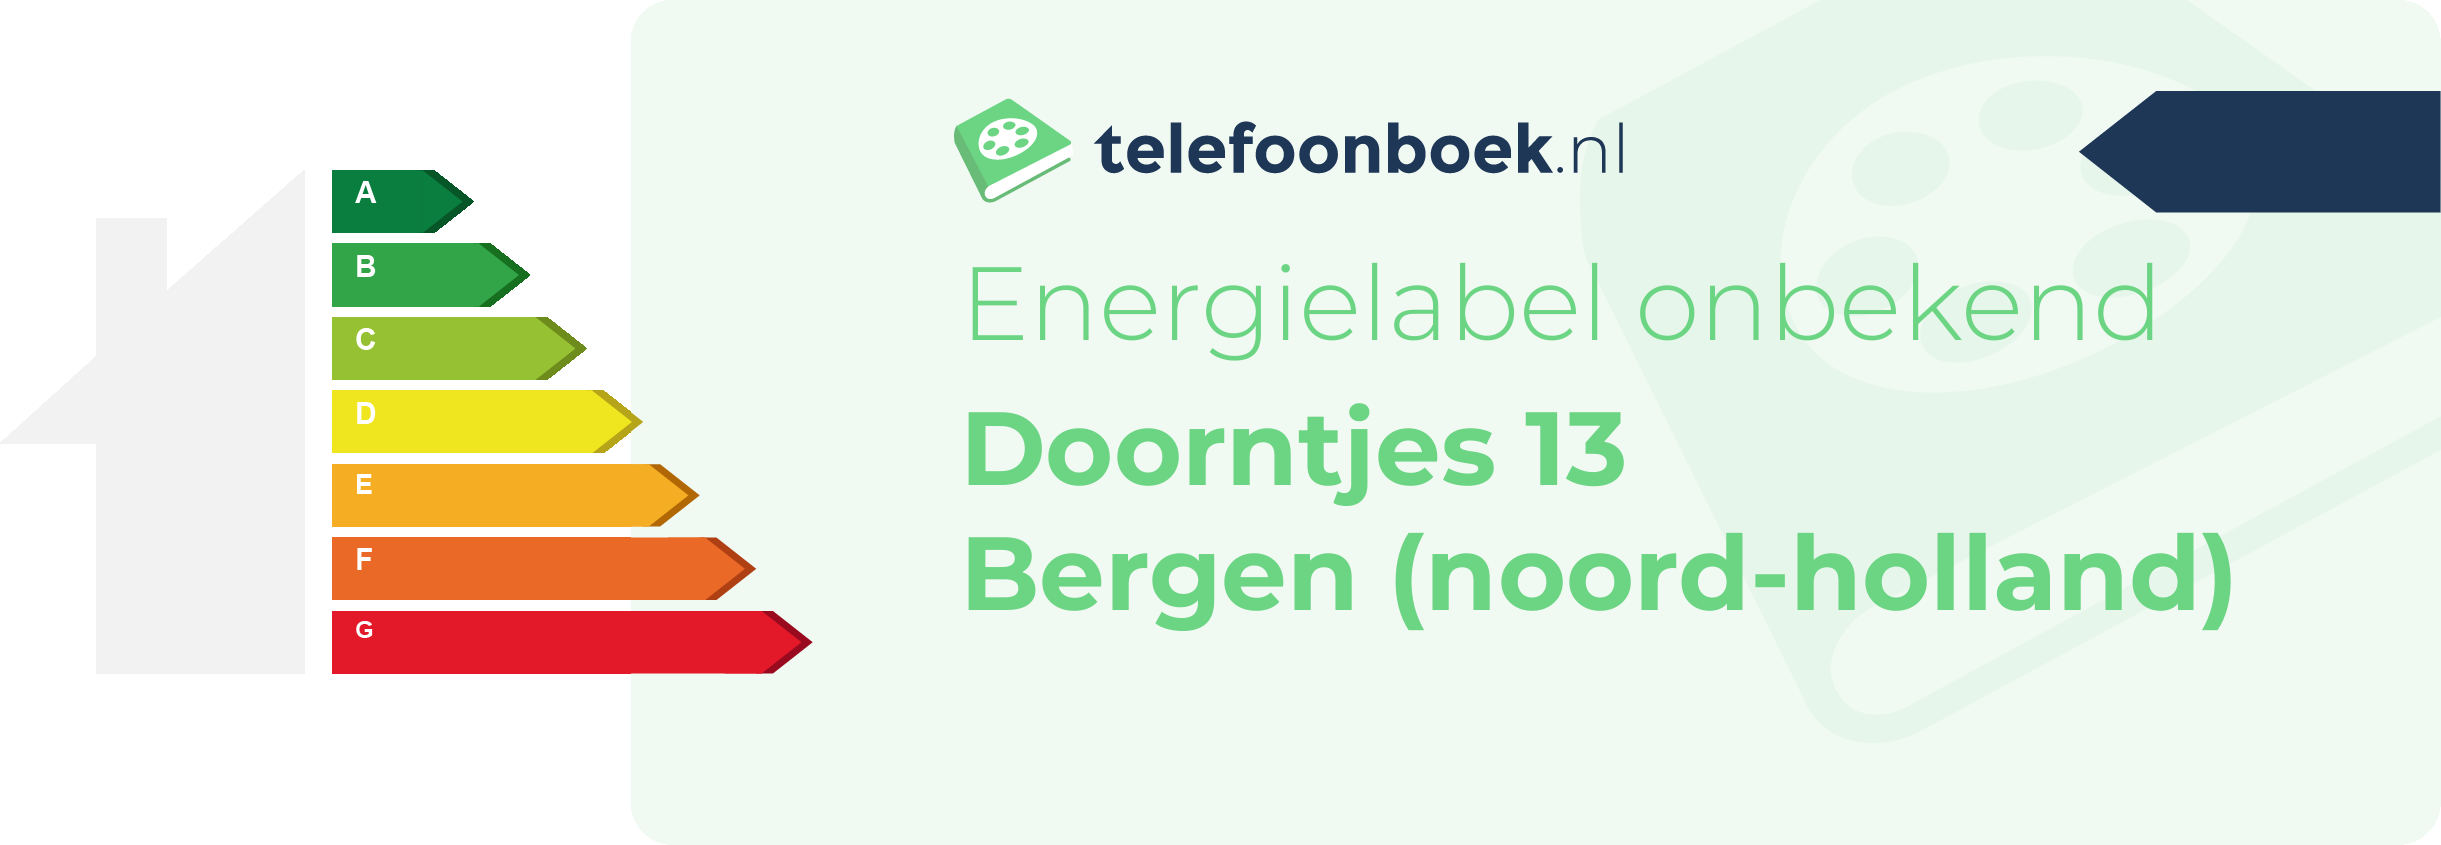 Energielabel Doorntjes 13 Bergen (Noord-Holland)